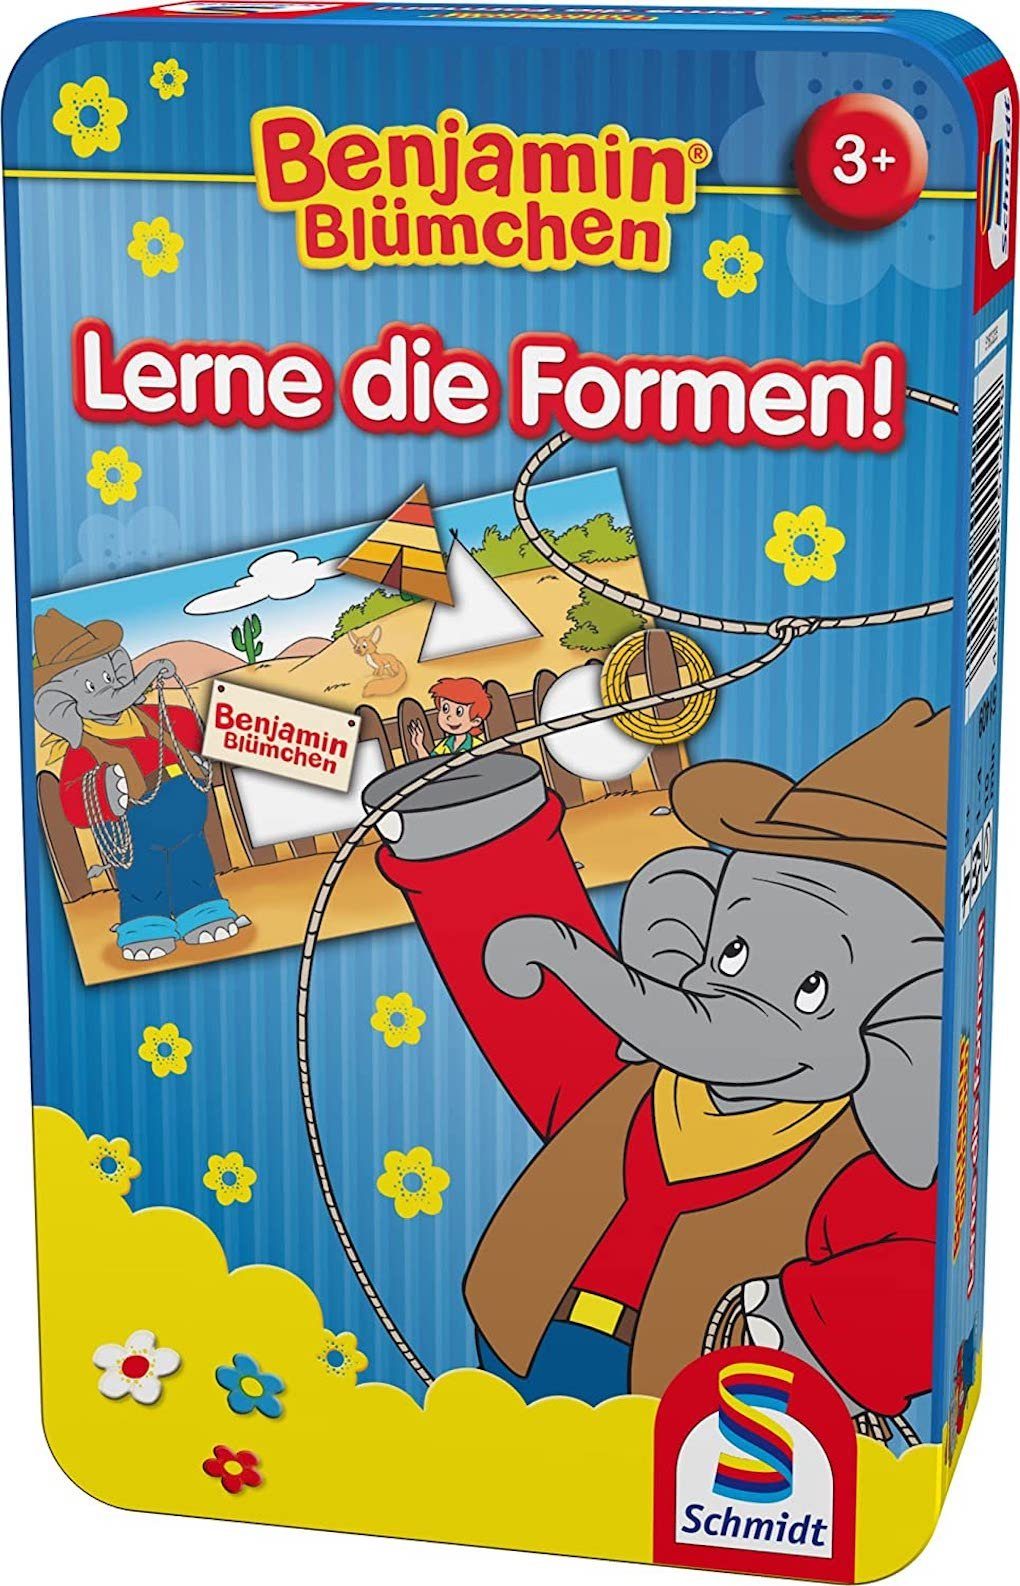 Schmidt Spiele Puzzle Benjamin Blümchen cm Steckpuzzle, 11,40 x die Puzzleteile, Formen! Verpackungsmaße: 3,90 18,40 x Lerne